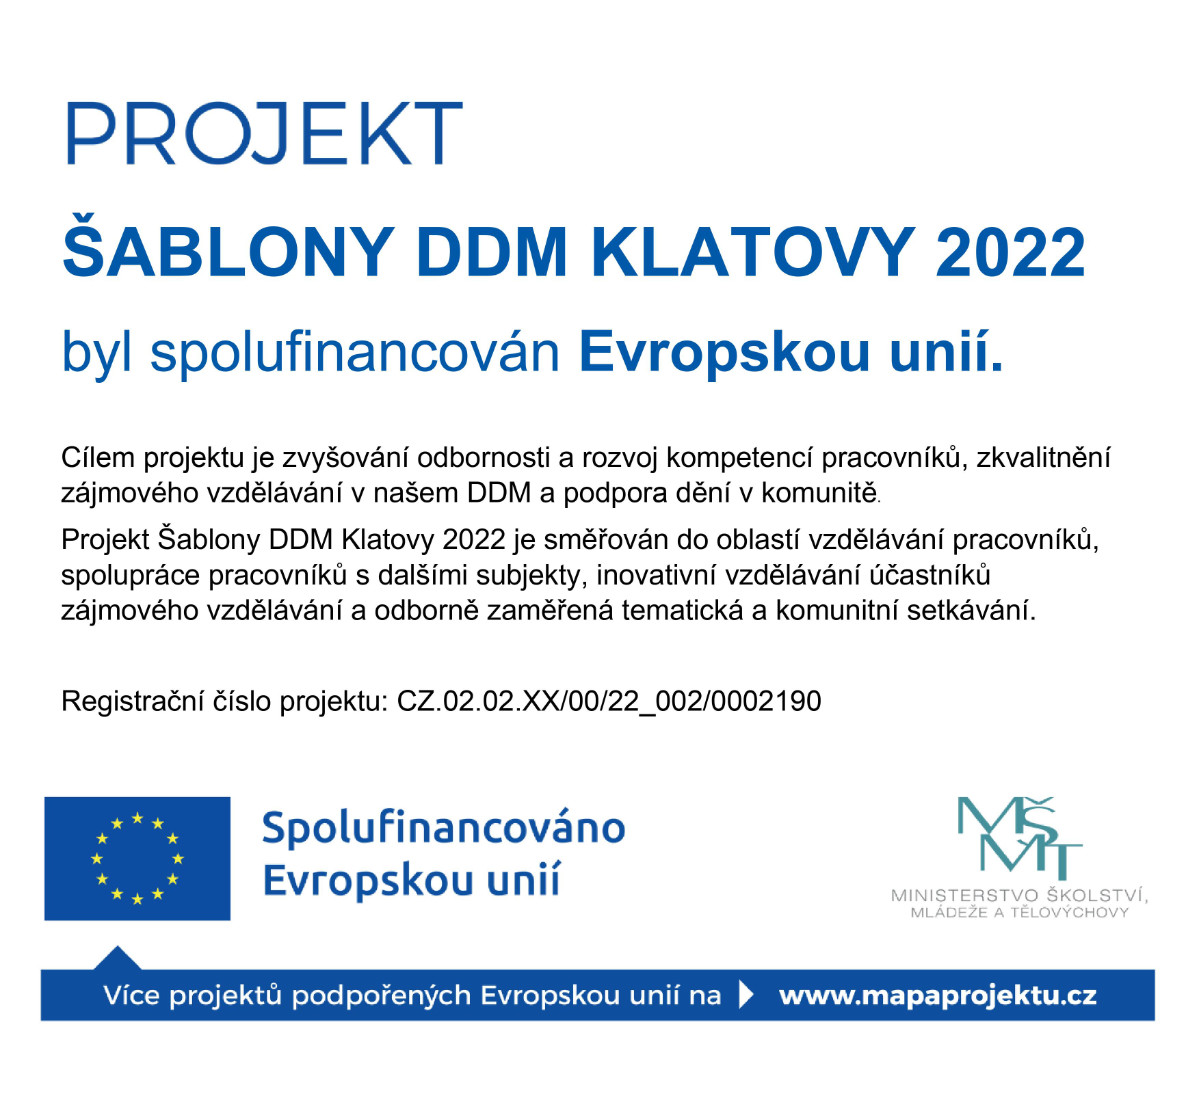 Šablony DDM Klatovy 2022